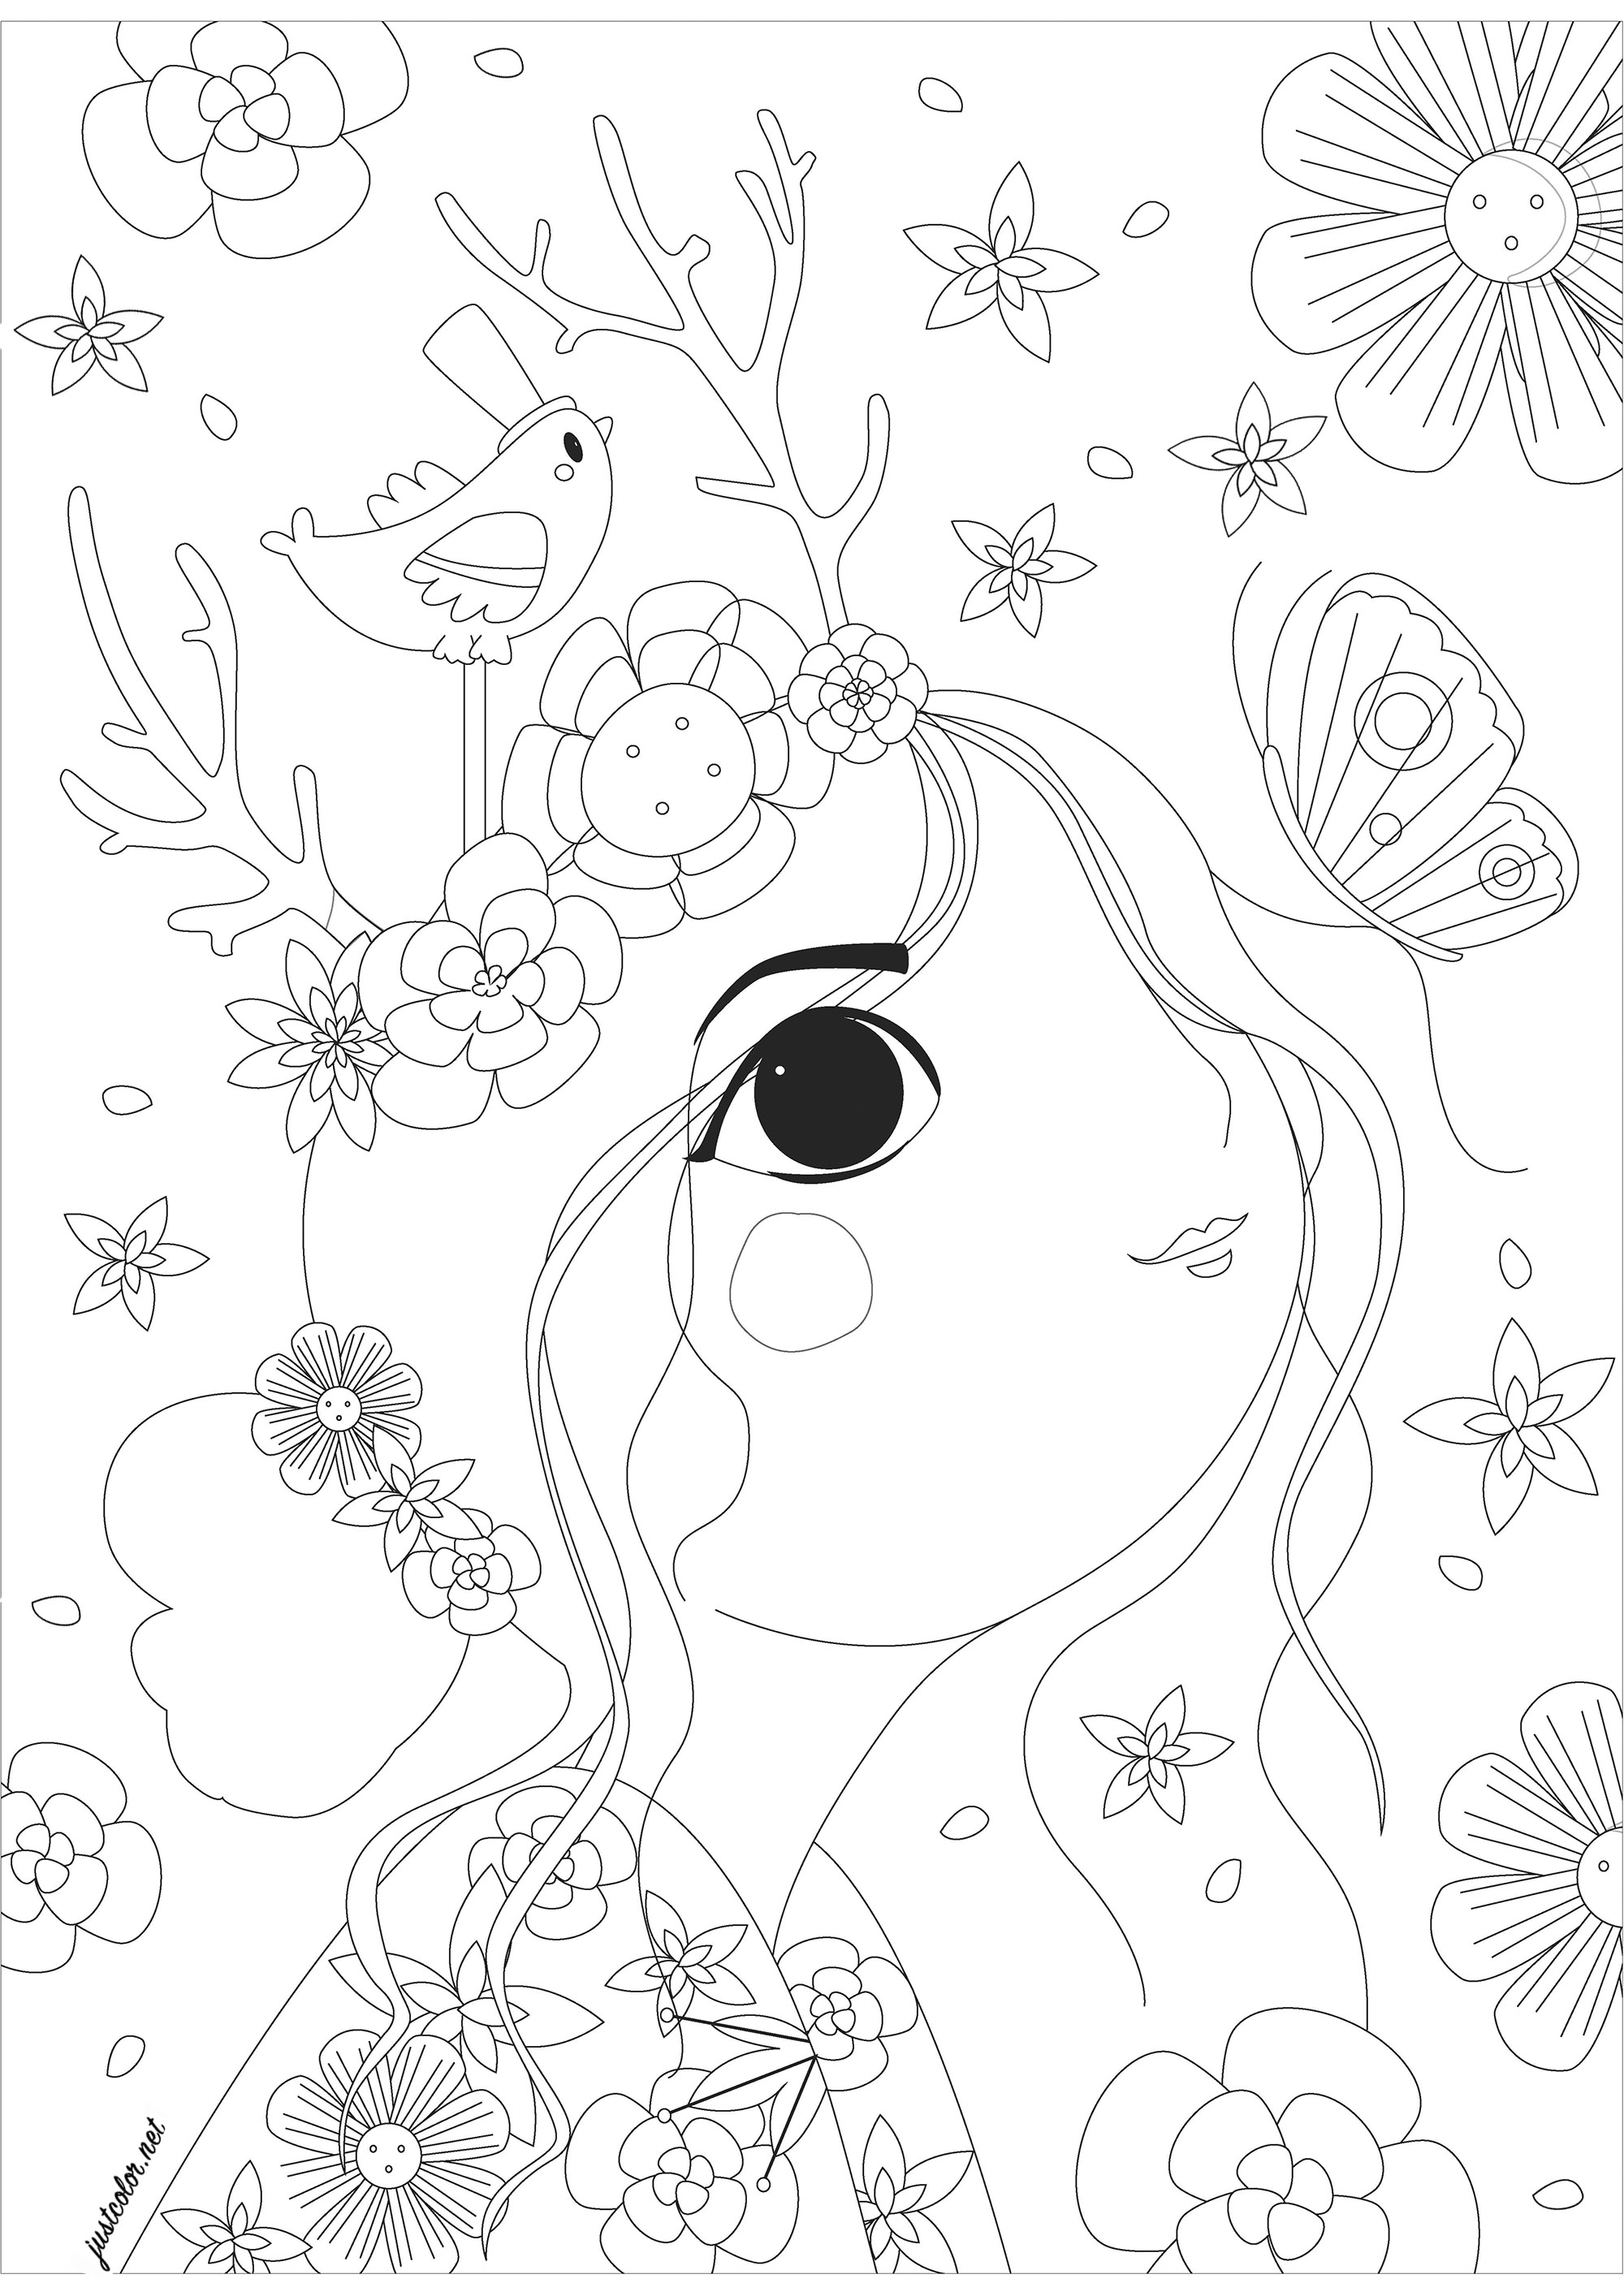 Frau im Profil mit Blick auf einen Schmetterling, umgeben von Blumen. Eine sehr beruhigende Malvorlage, die nur darauf wartet, schöne Farben für all die Blumen, Schmetterlinge, hübschen kleinen Vogel und weiblichen Charakter mit einem einzigartigen Stil gezeichnet.